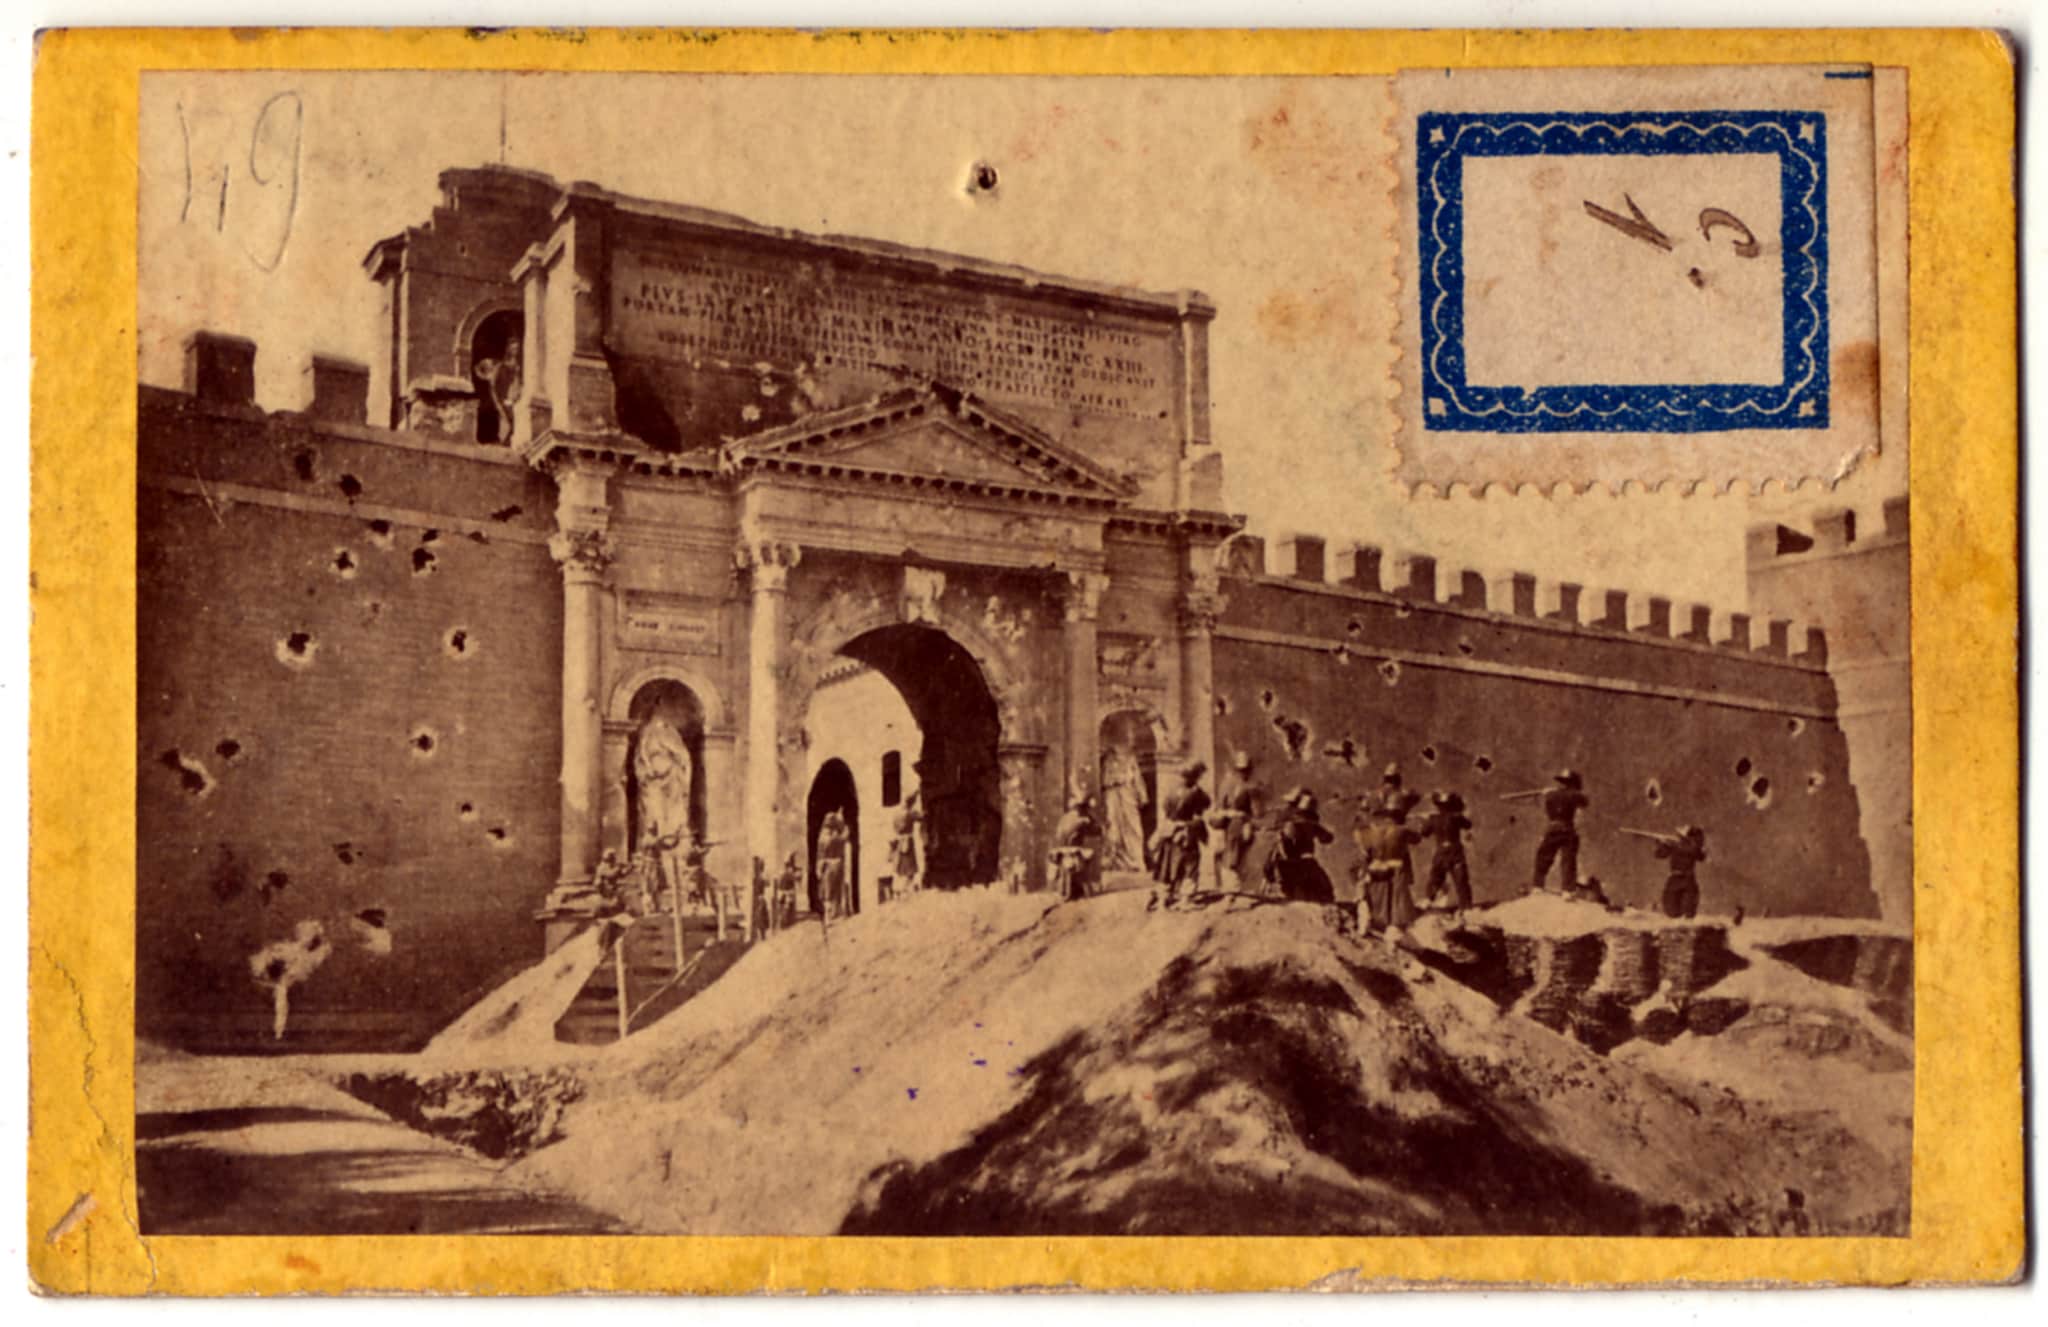 Fotografia ricordo con un gruppo di bersaglieri “in posa” di fronte a Porta Pia. 1870 